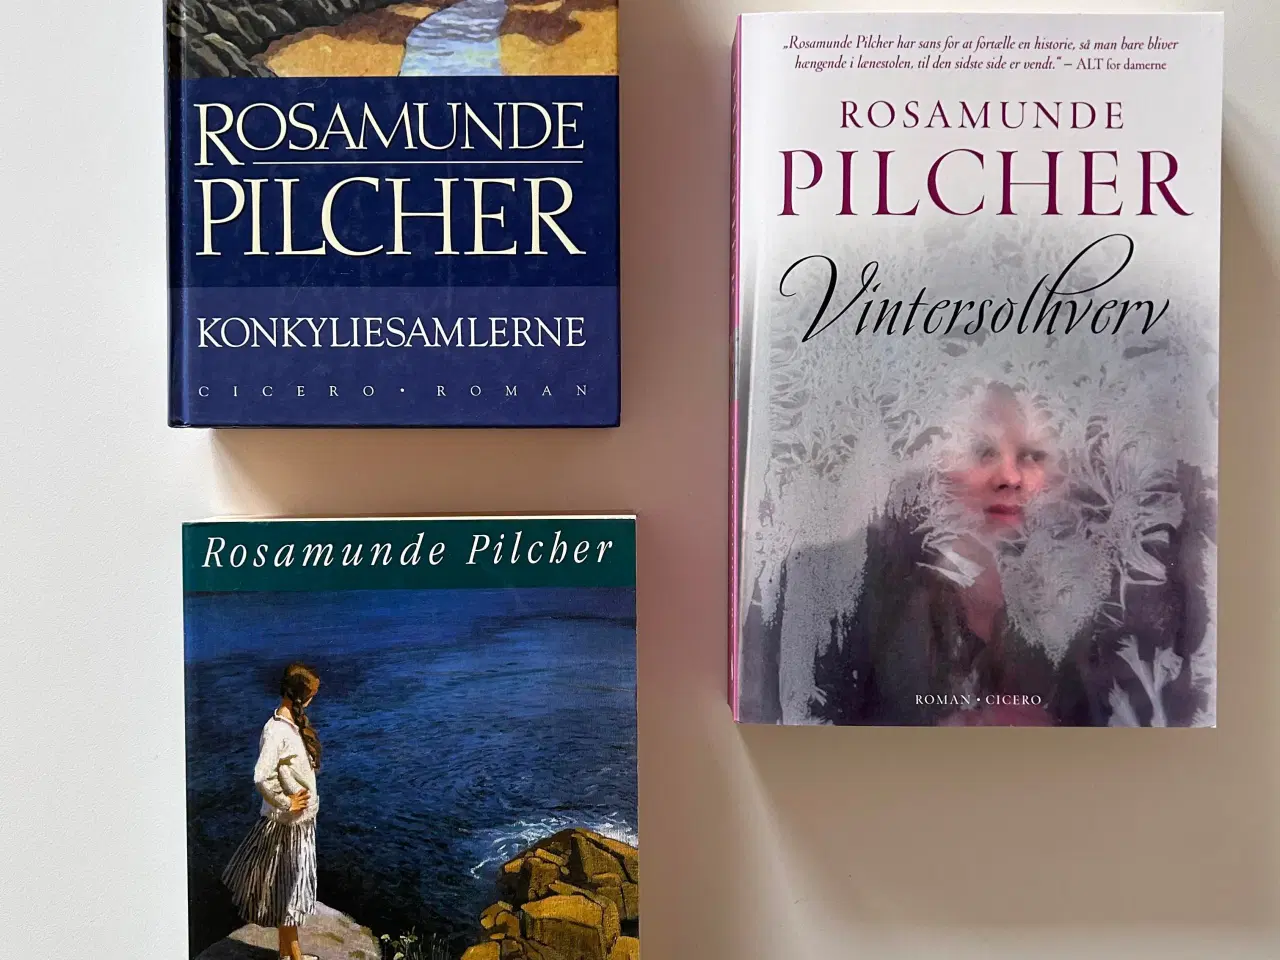 Billede 1 - Rosamunde Pilcher bog, 3 titler